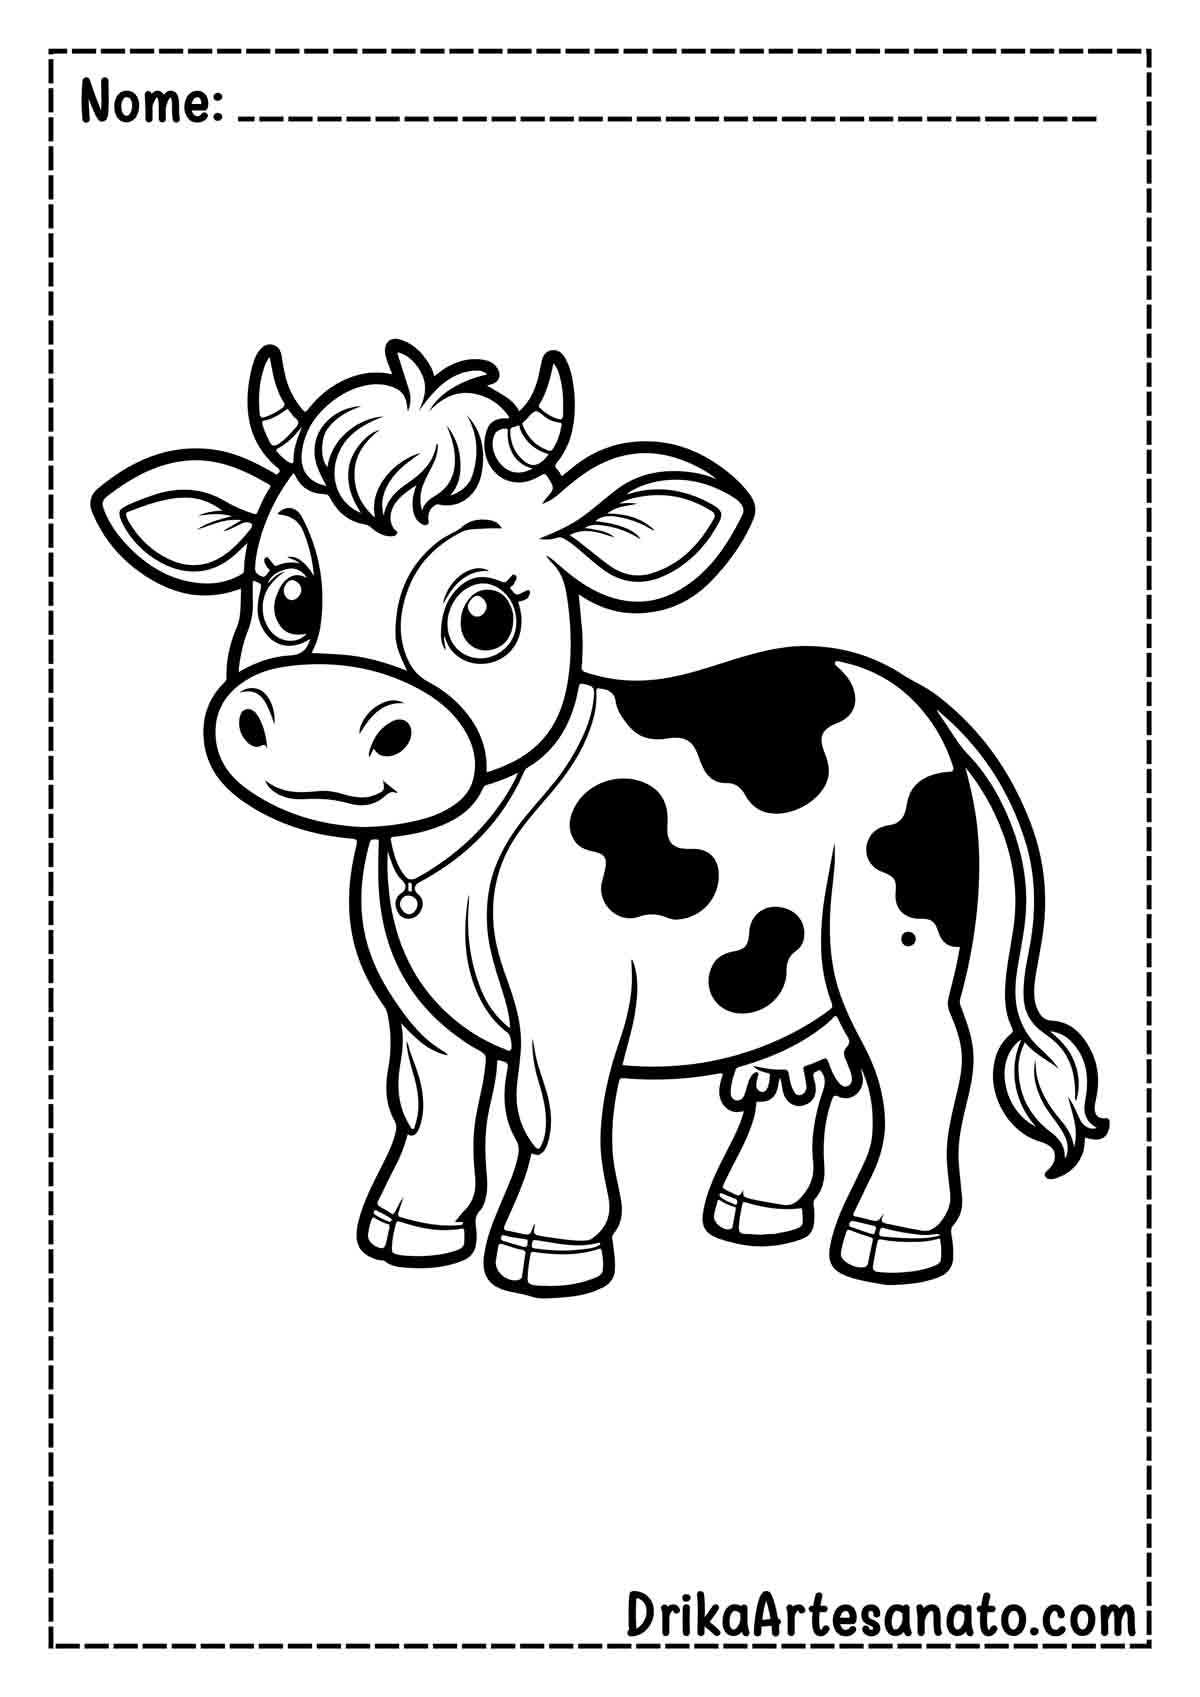  Desenho de Vaca para Imprimir